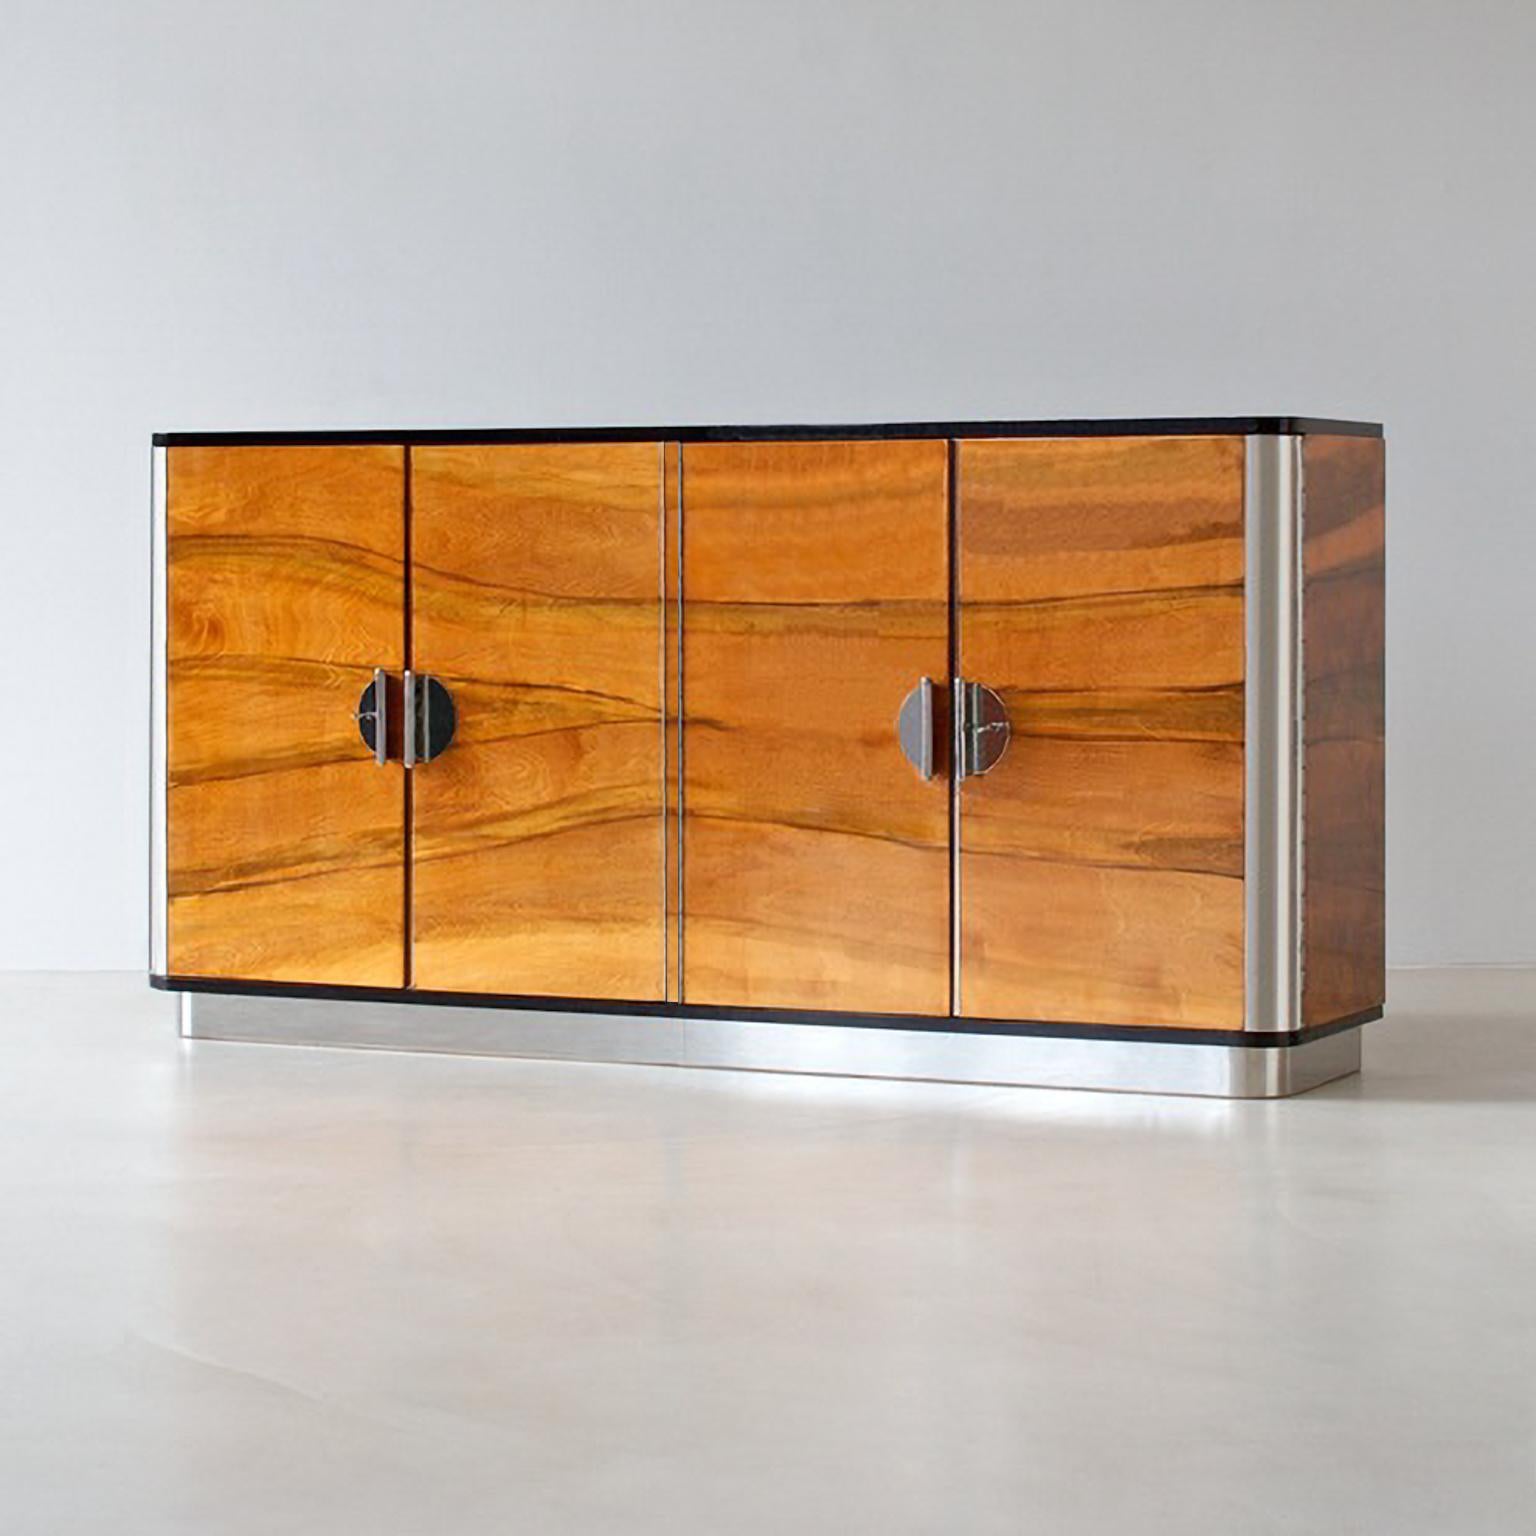 Bespoke modernist four-door sideboard, veneered wood, chrome plated metal.
